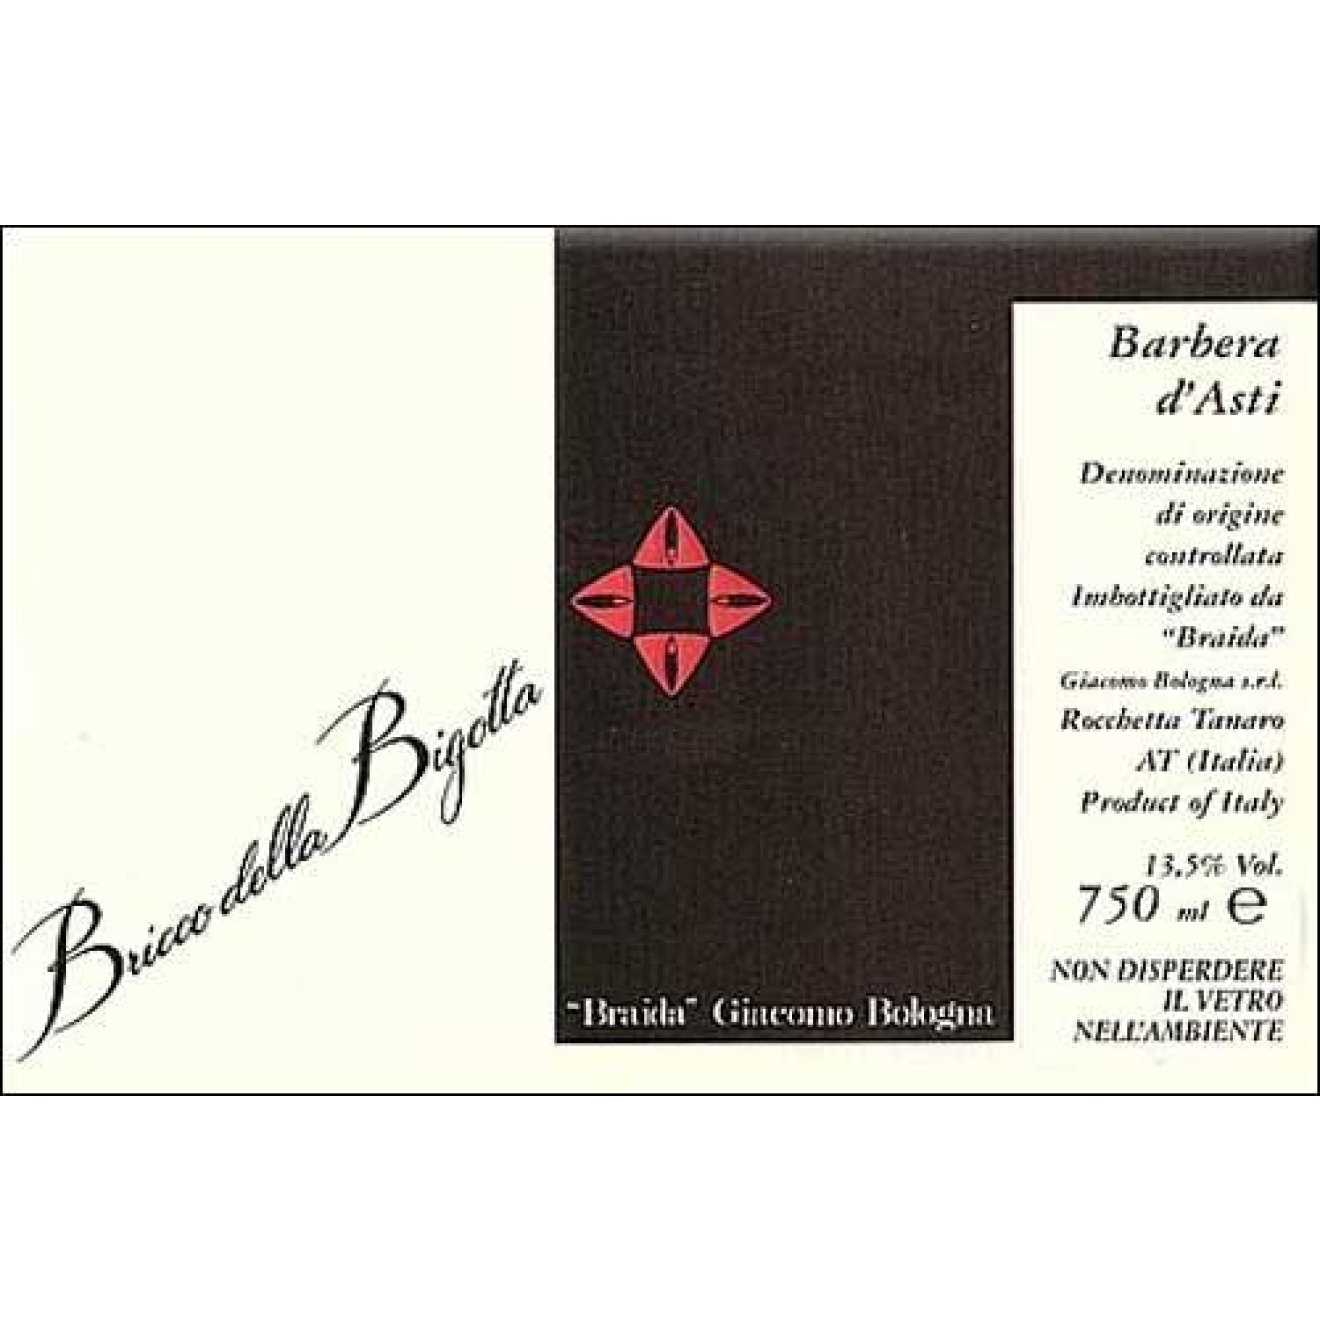 2003 Barbera d'Asti "Bricco della Bigotta" - Braida